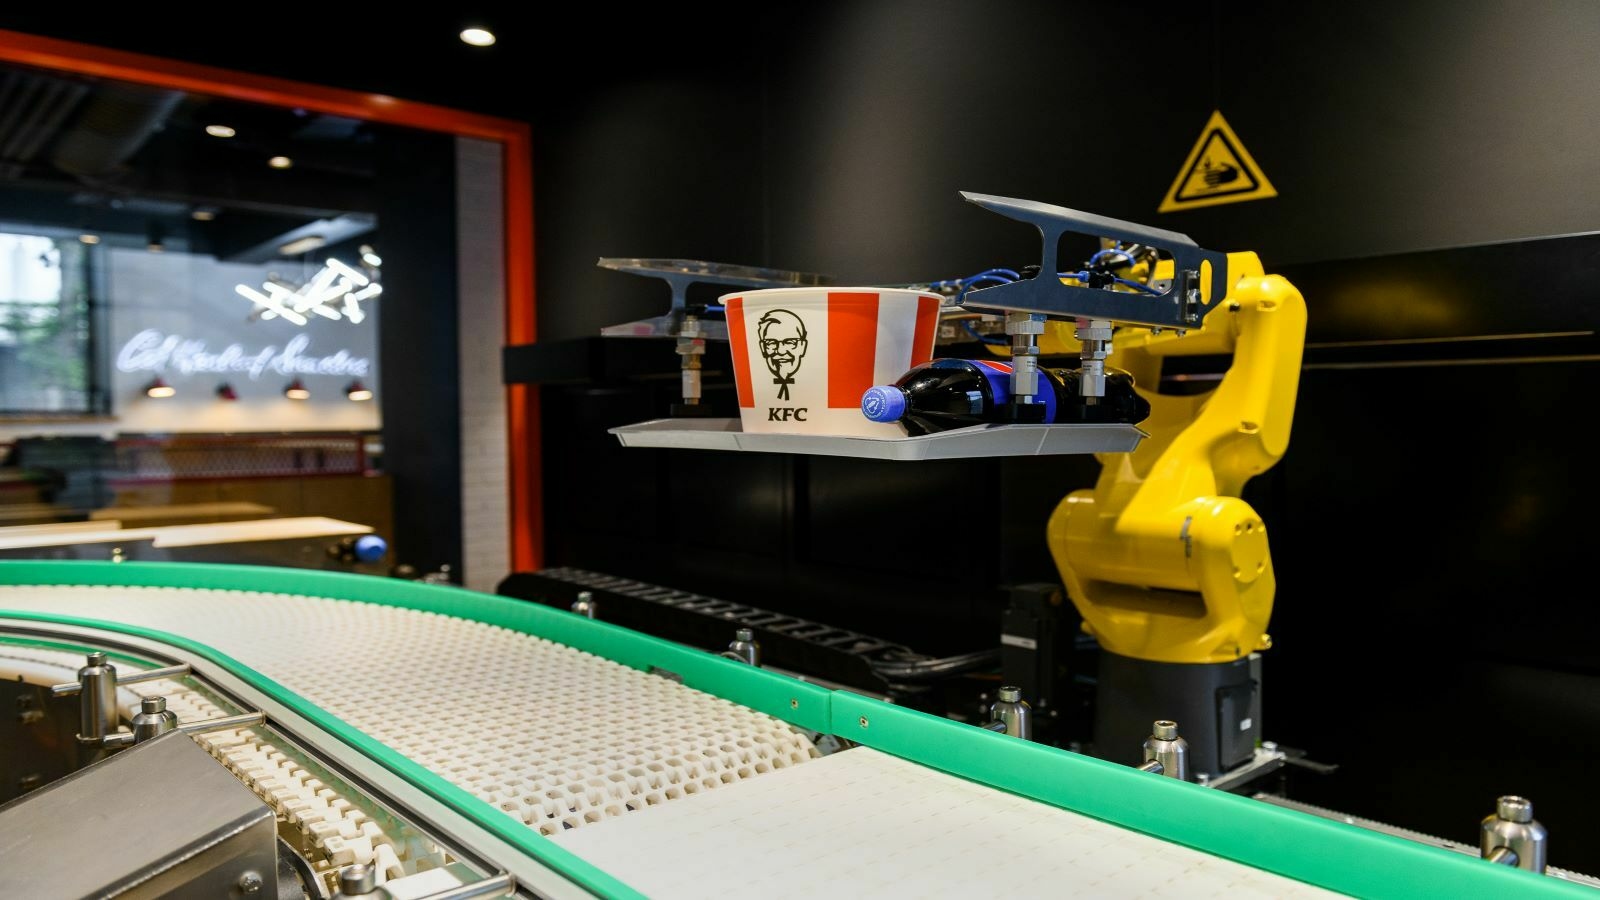 KFC restaurant automized